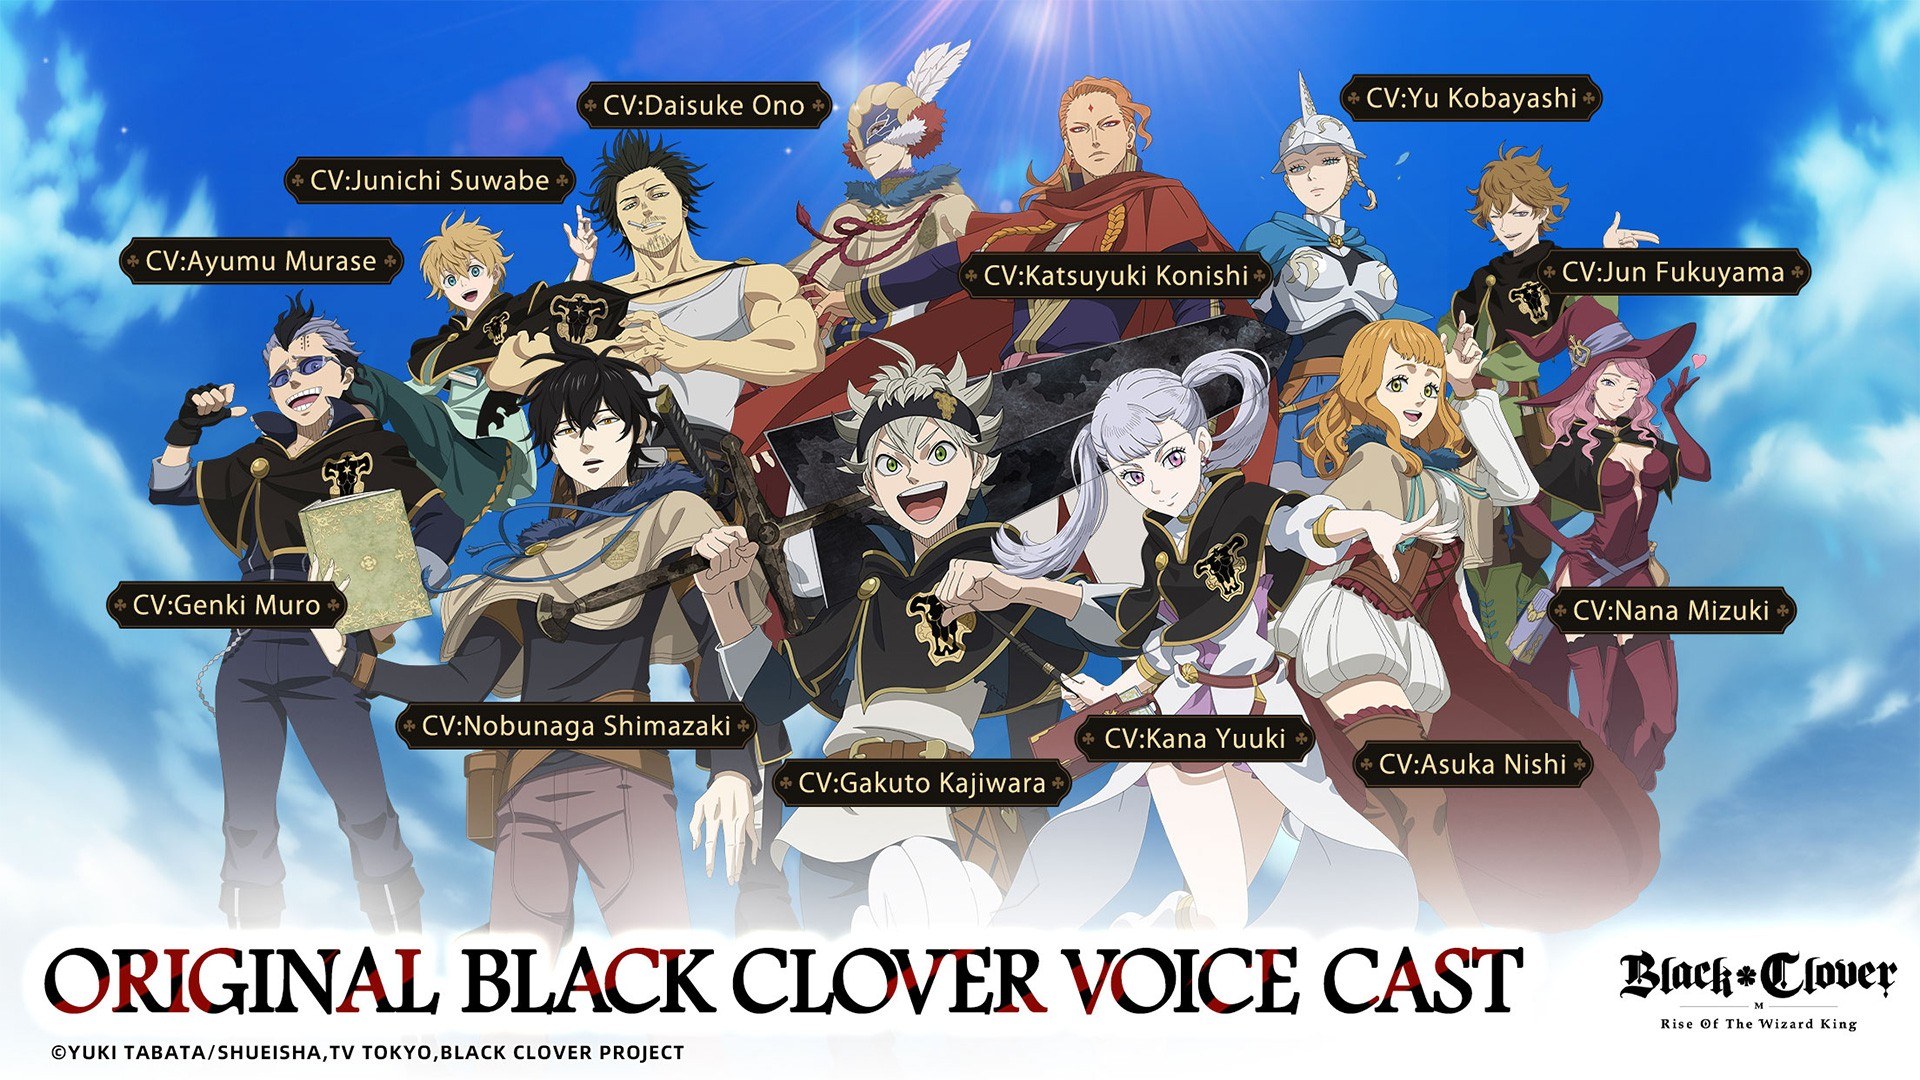 Black Clover M: Rise of the Wizard King Vorregistrierung startet in ausgewählten Regionen